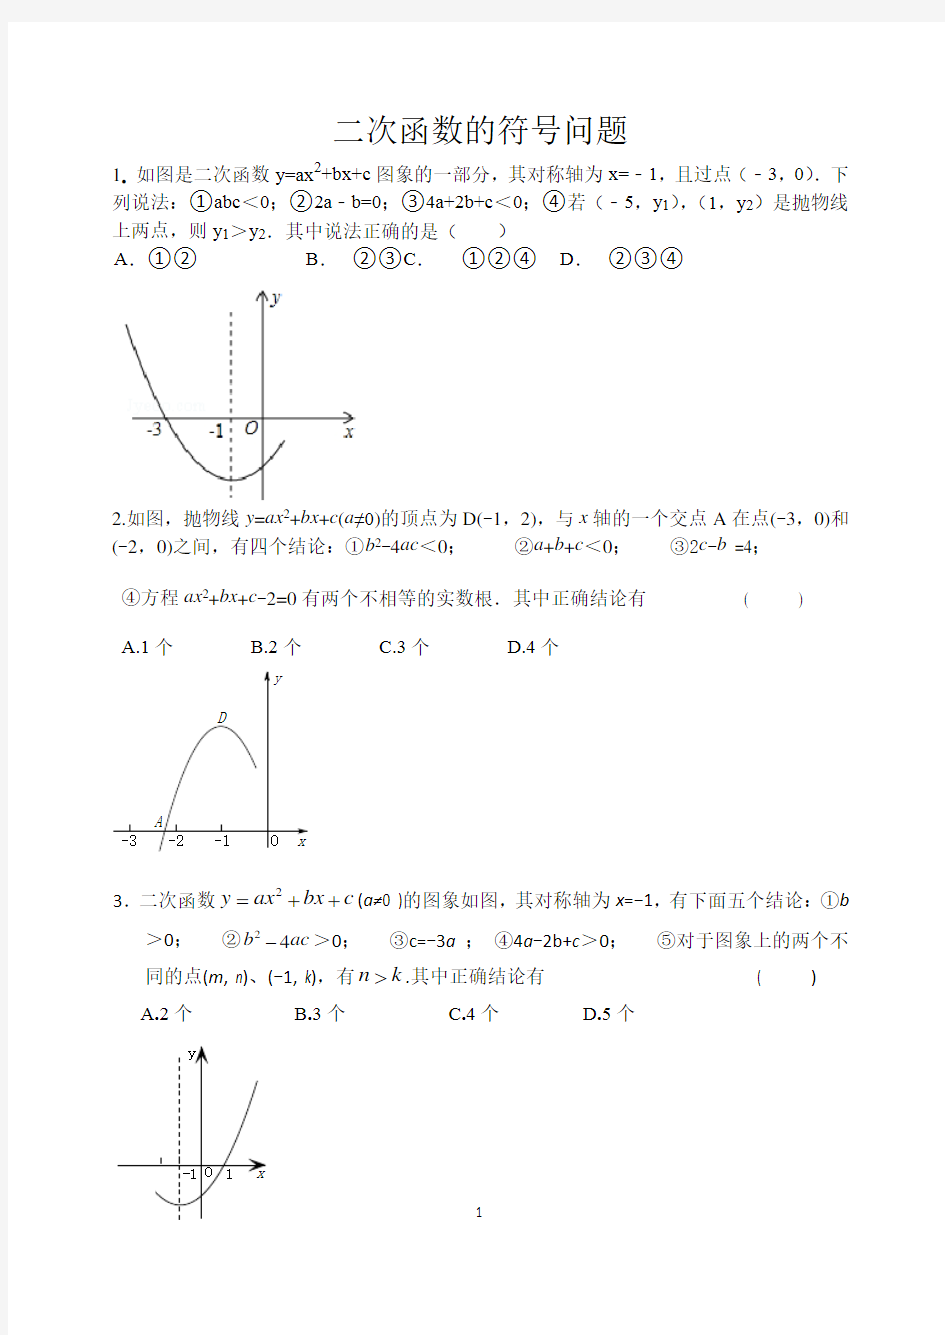 二次函数a,b,c 的符号判断问题